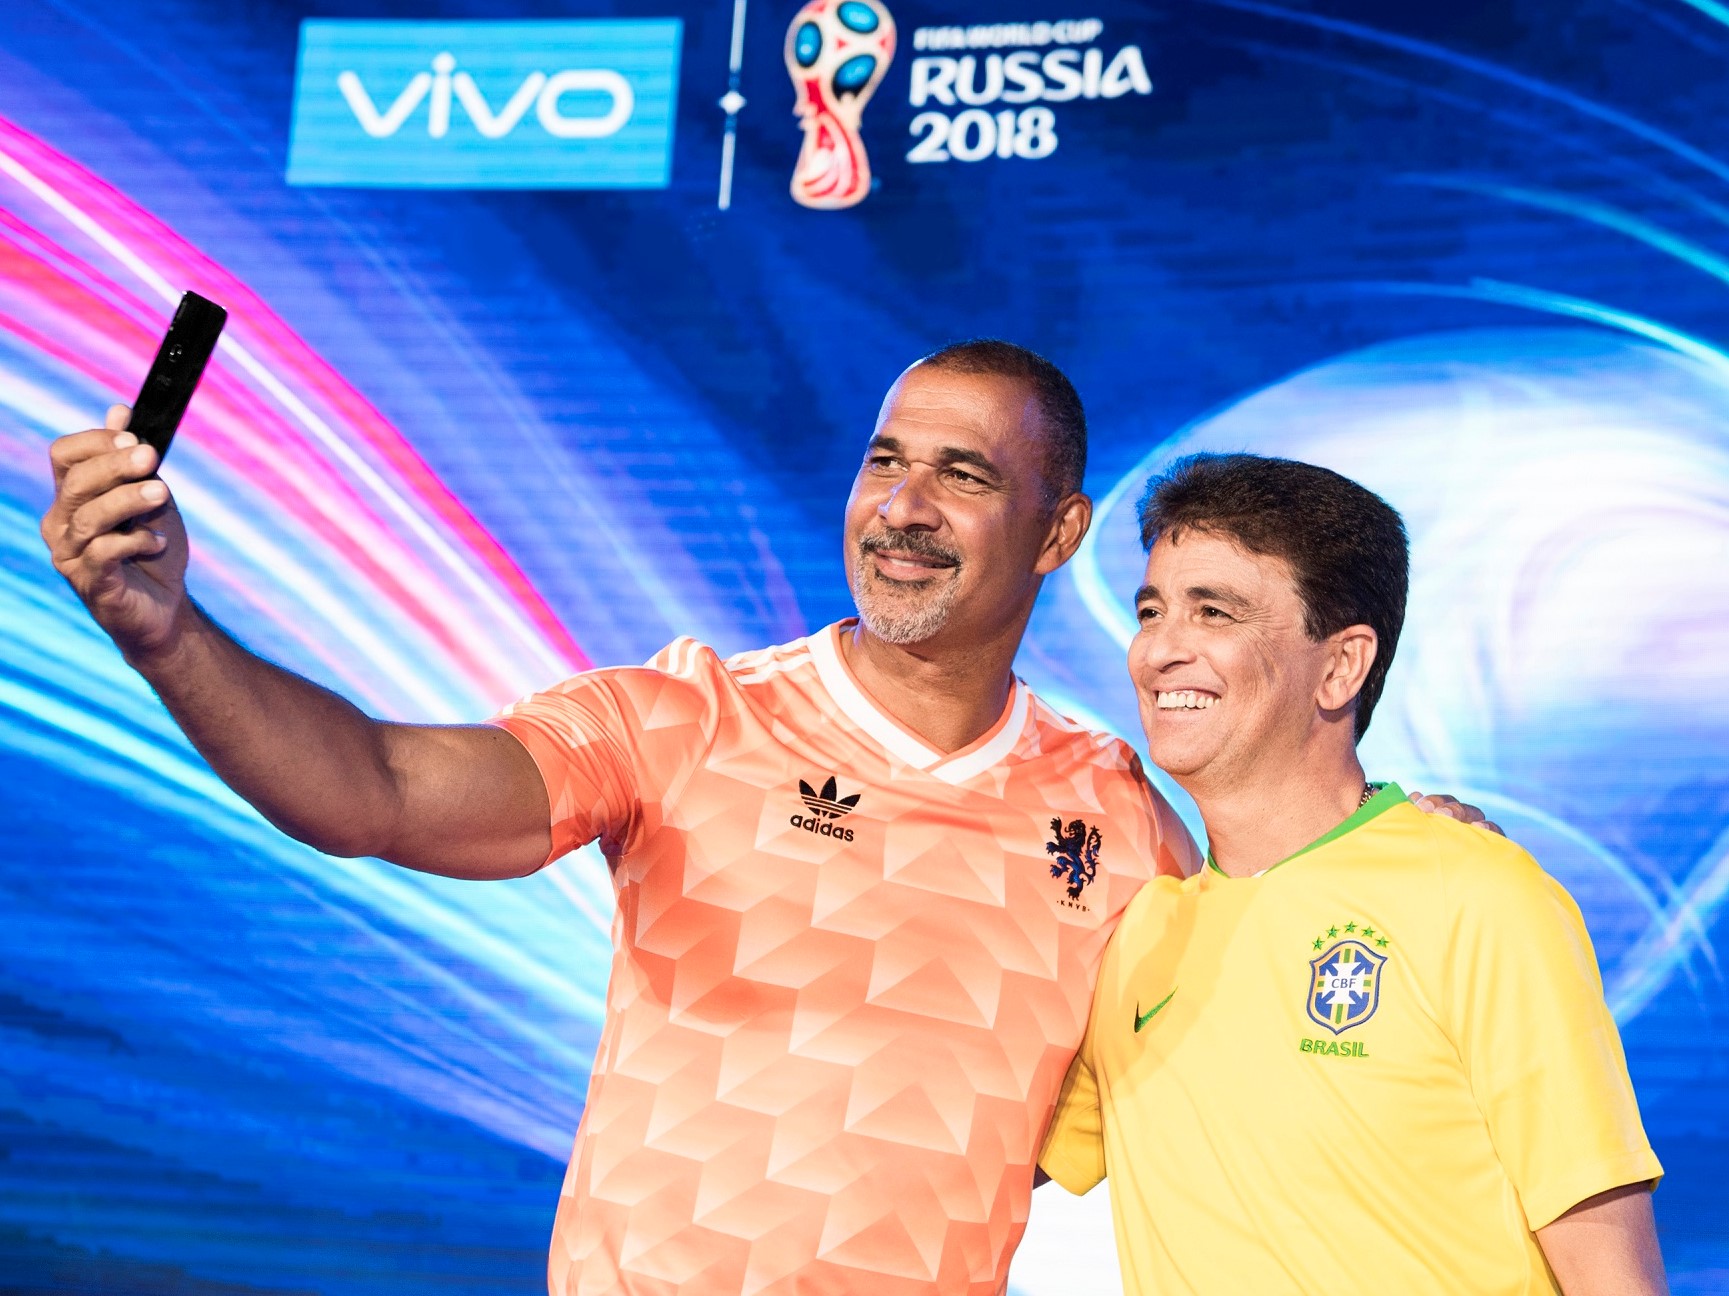 Vivo ra mắt phiên bản V9 giới hạn dành riêng cho World Cup 2018